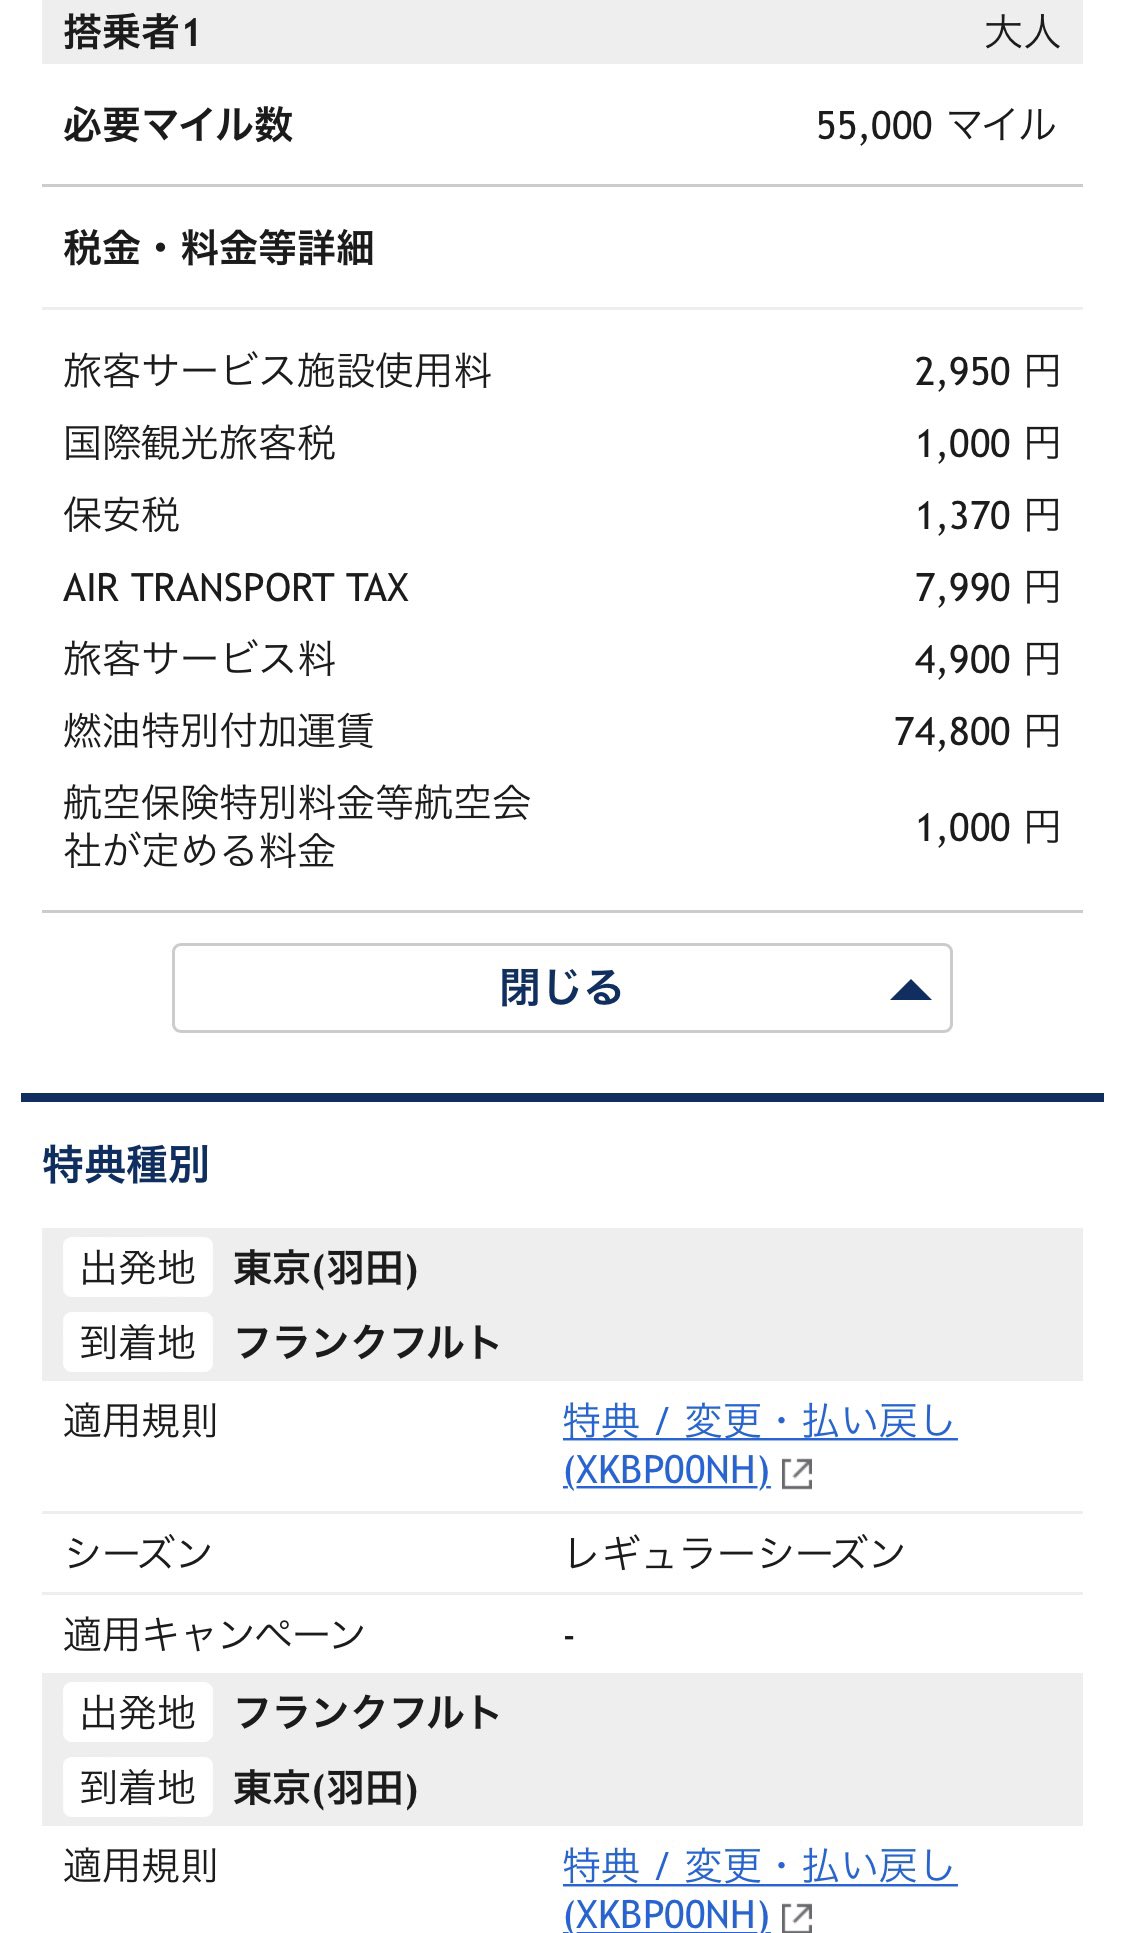 Kk 東京 フランクフルト往復をana特典航空券で買うと 55 000マイル 約10万円の諸費用がかかるようになりましたね 普通に航空券買うのと変わらんやんけ T Co 9htyywtv5n Twitter